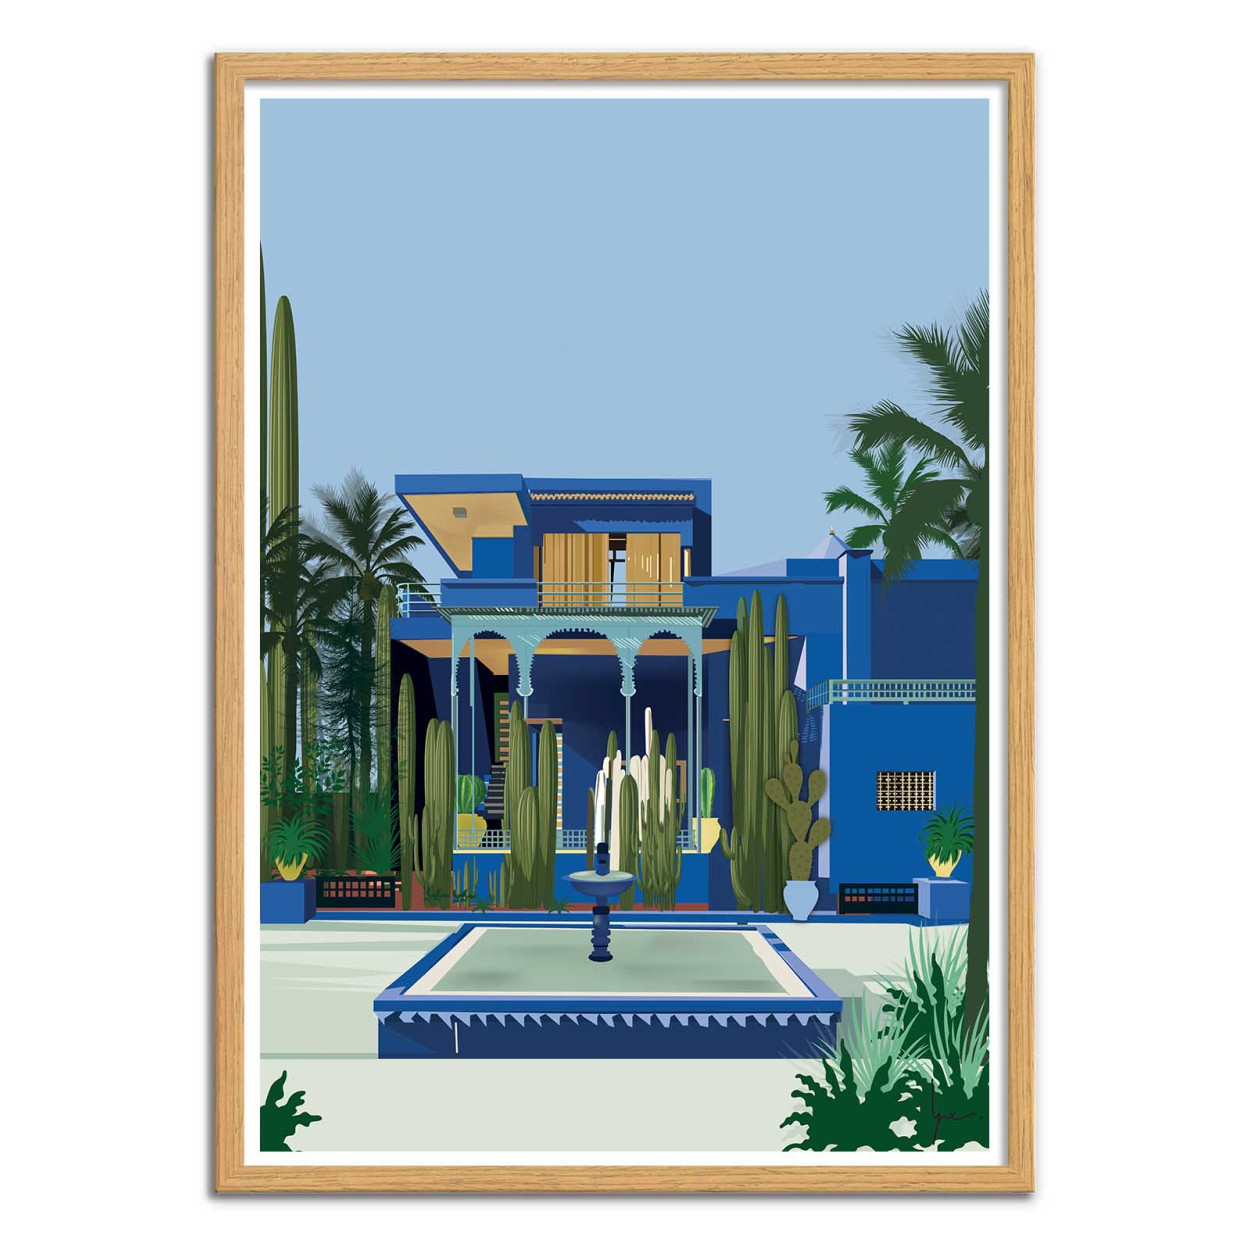 Poster the majorelle garden of Marrakech - Fineartsfrance